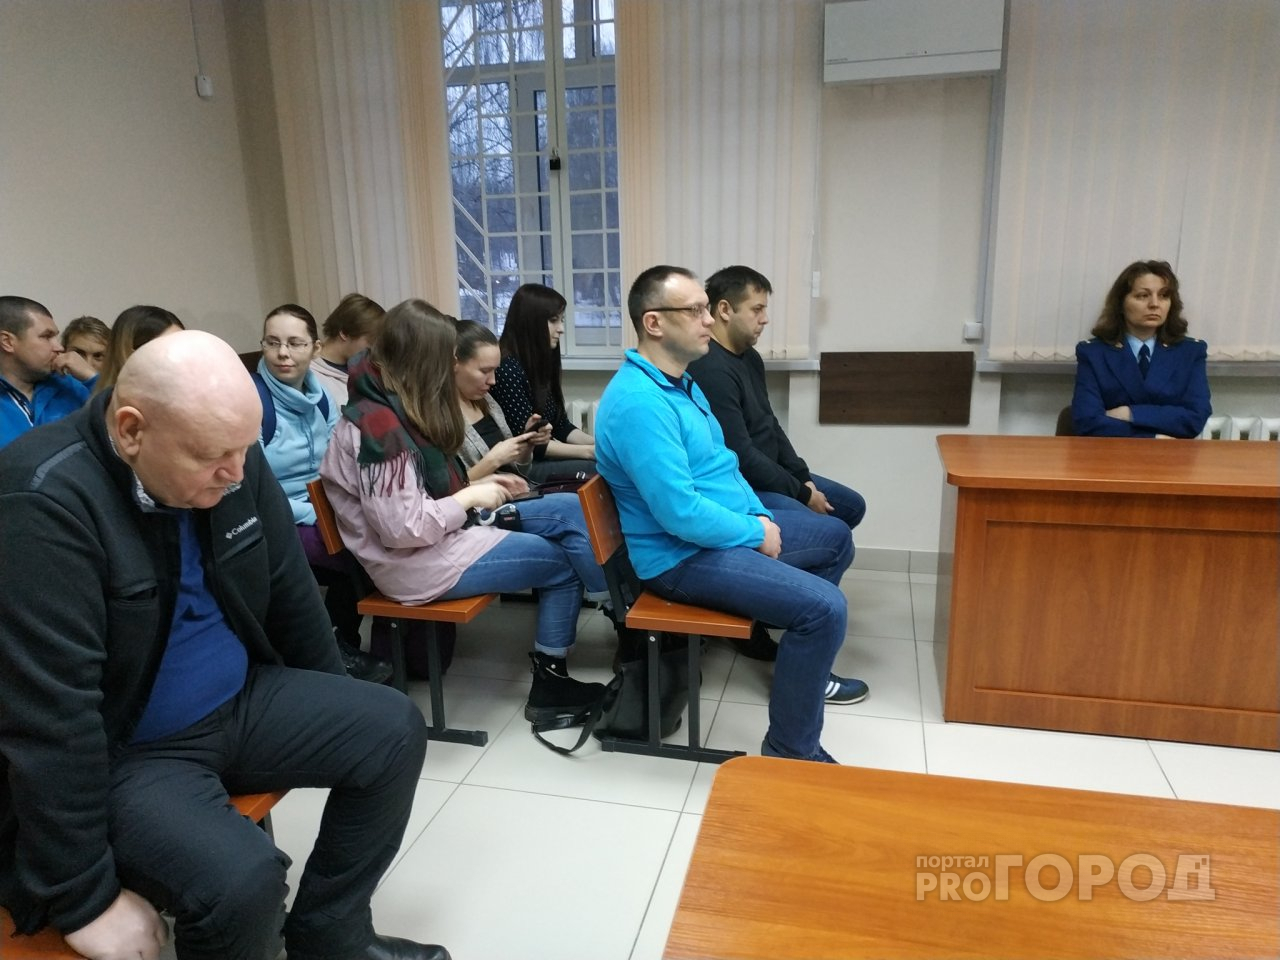 Трансляция: вынесли приговор депутату и чиновникам за мошенничество "Электронного проездного"